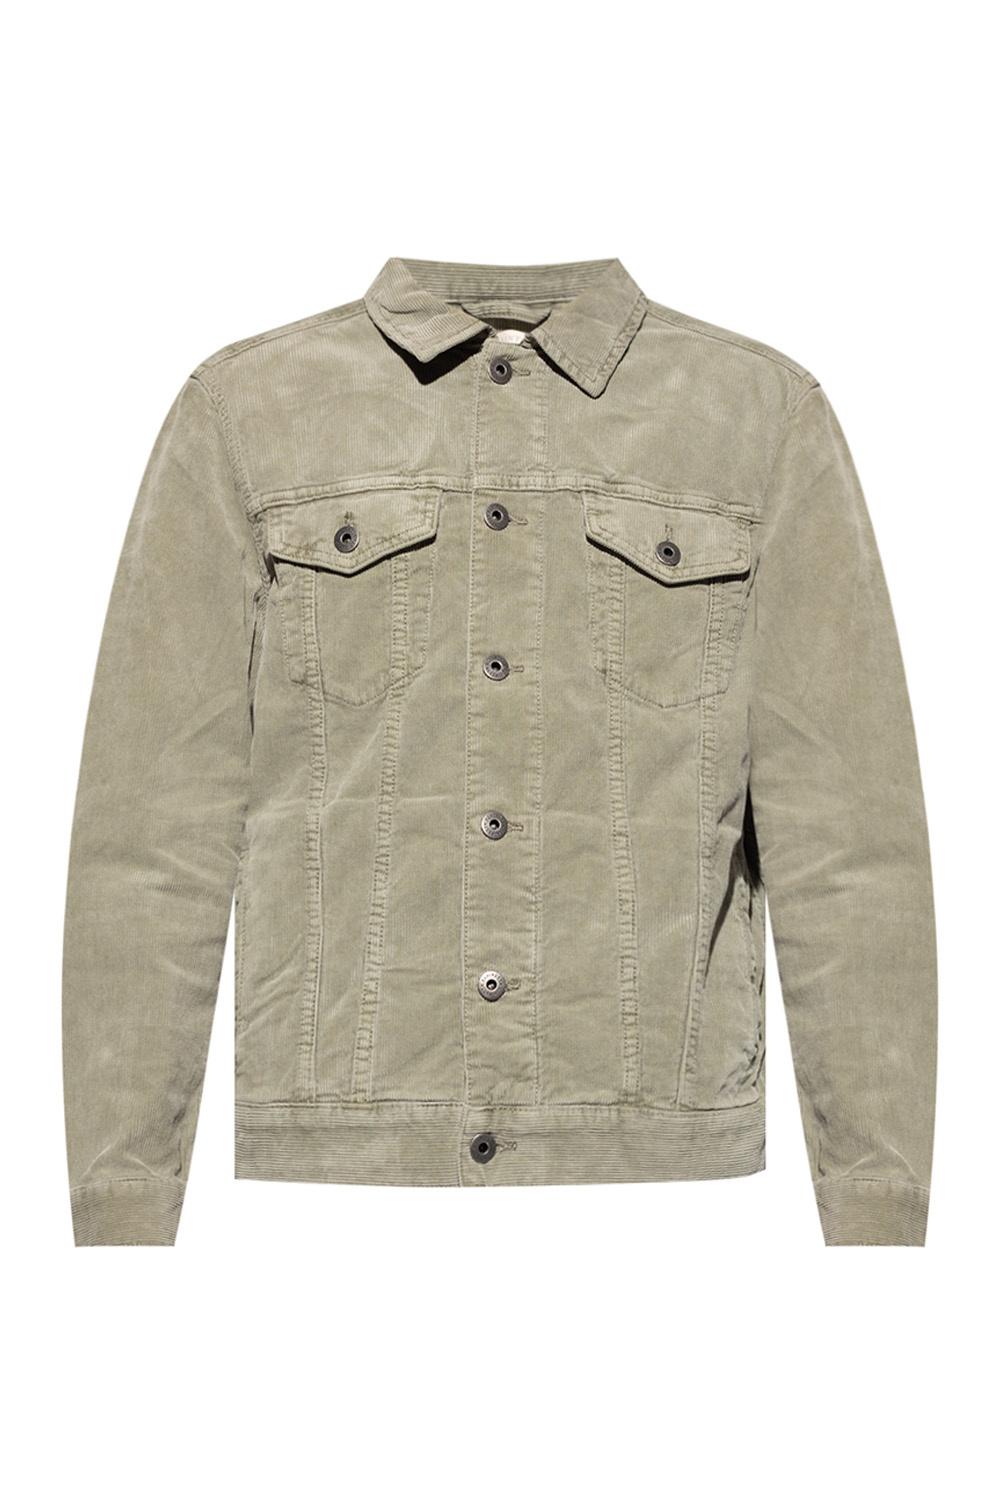 IetpShops Morocco - \'Marton\' in Tailor AllSaints - Sweatshirt Tom jacket Rundhalsausschnitt corduroy down Silbergrau mit